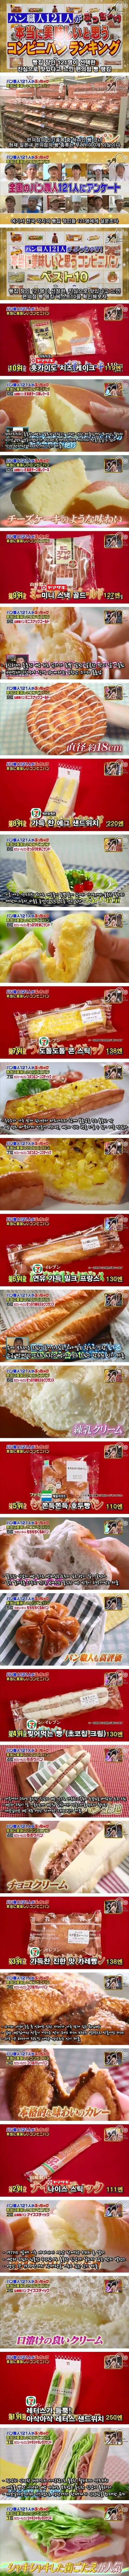 빵집 장인들도 인정하는 일본 편의점 